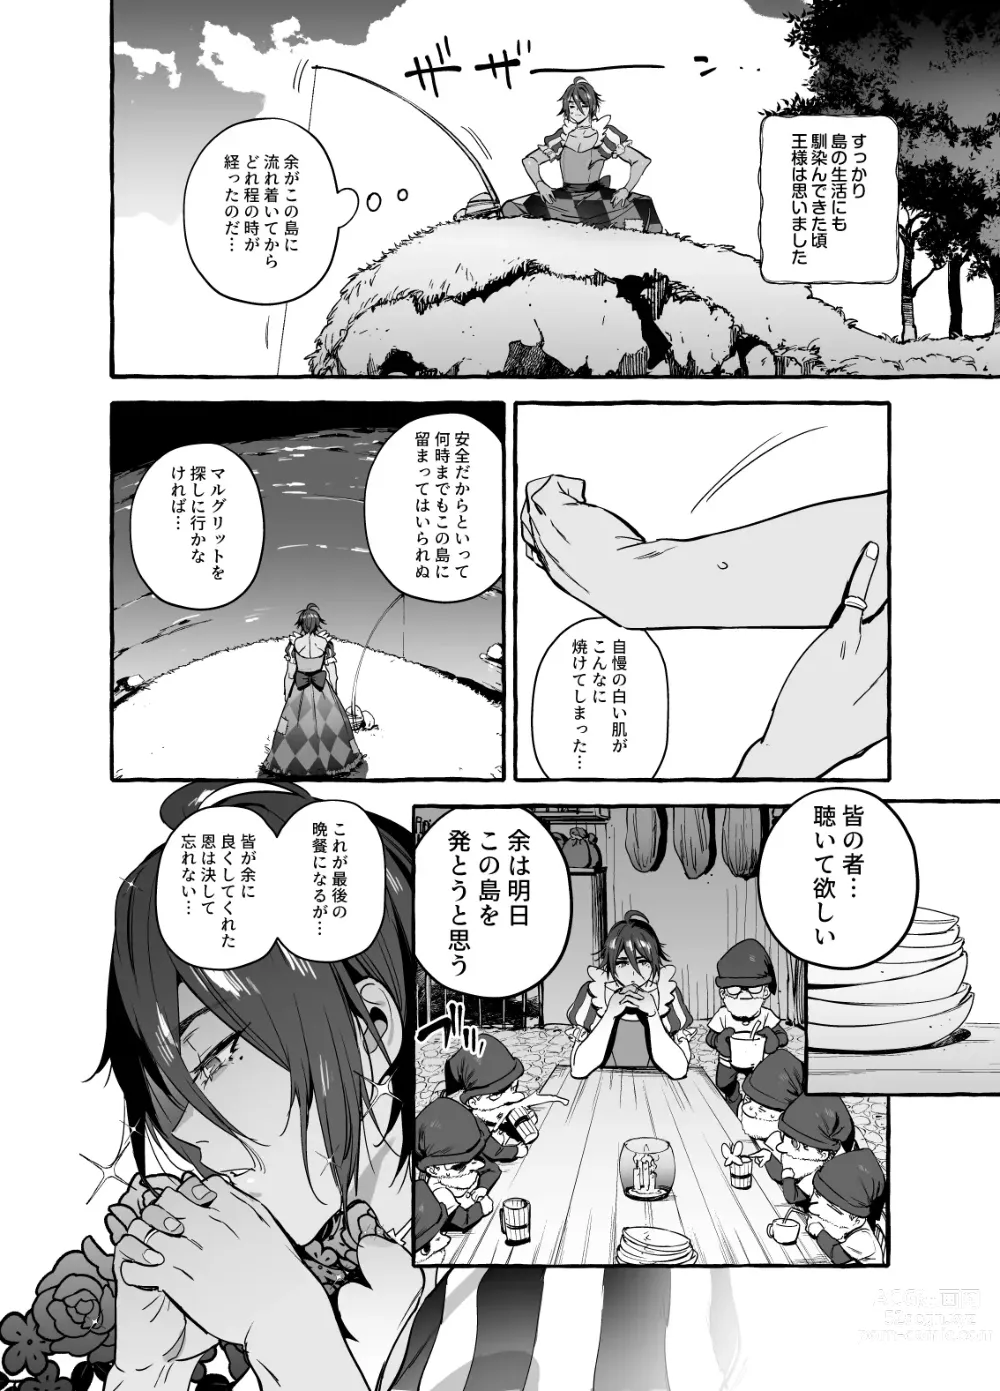 Page 30 of doujinshi Shirayuki Ou to Shichinin no Yaro-domo